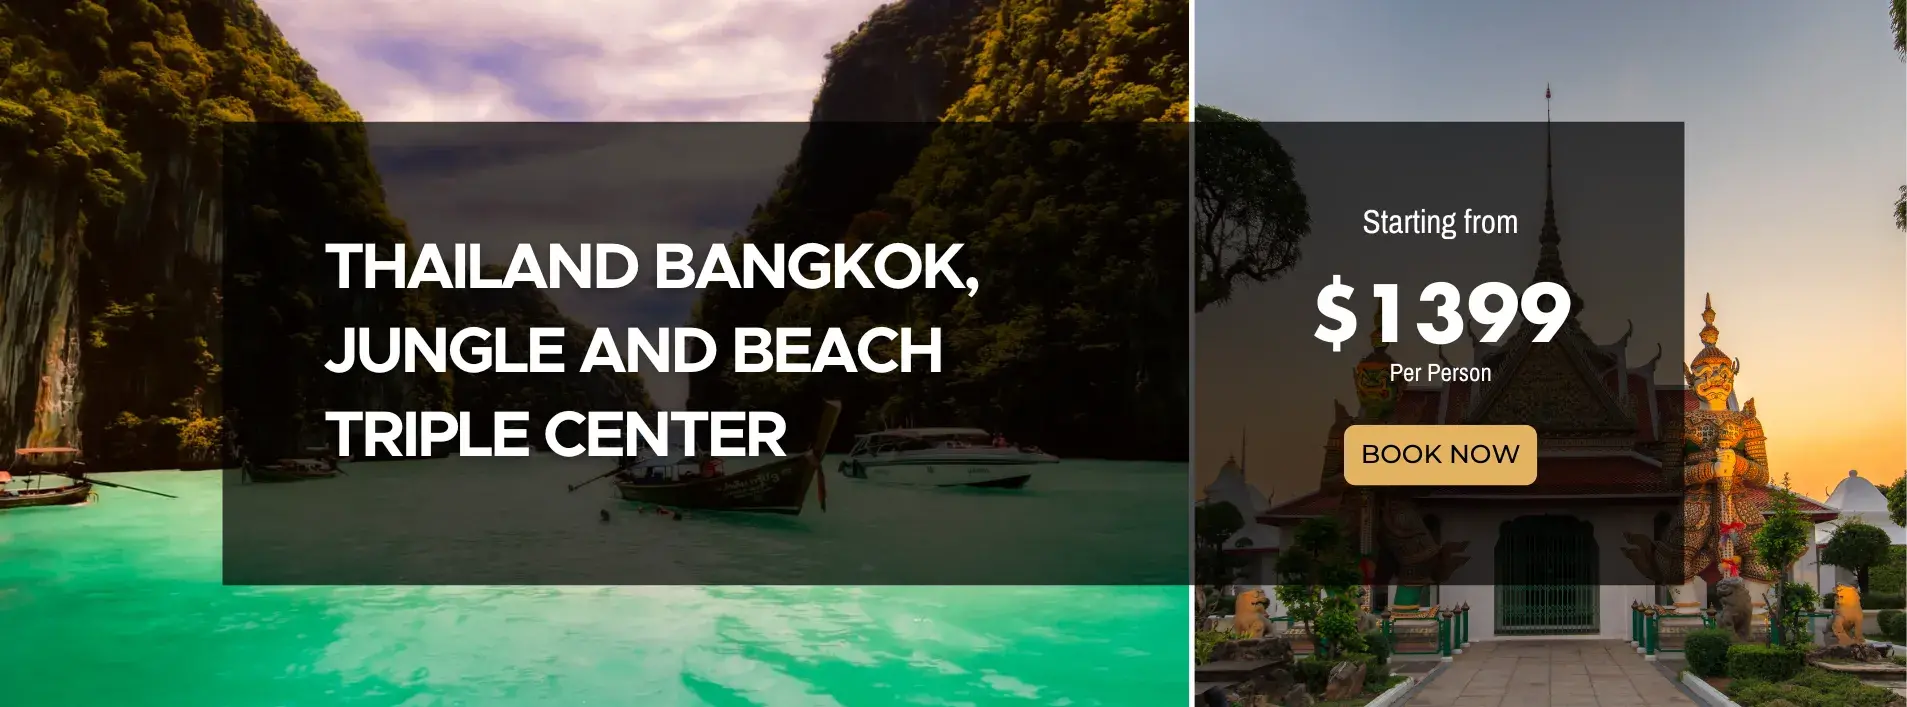 Thailand Bangkok, Jungle and Beach Triple Center W/Air